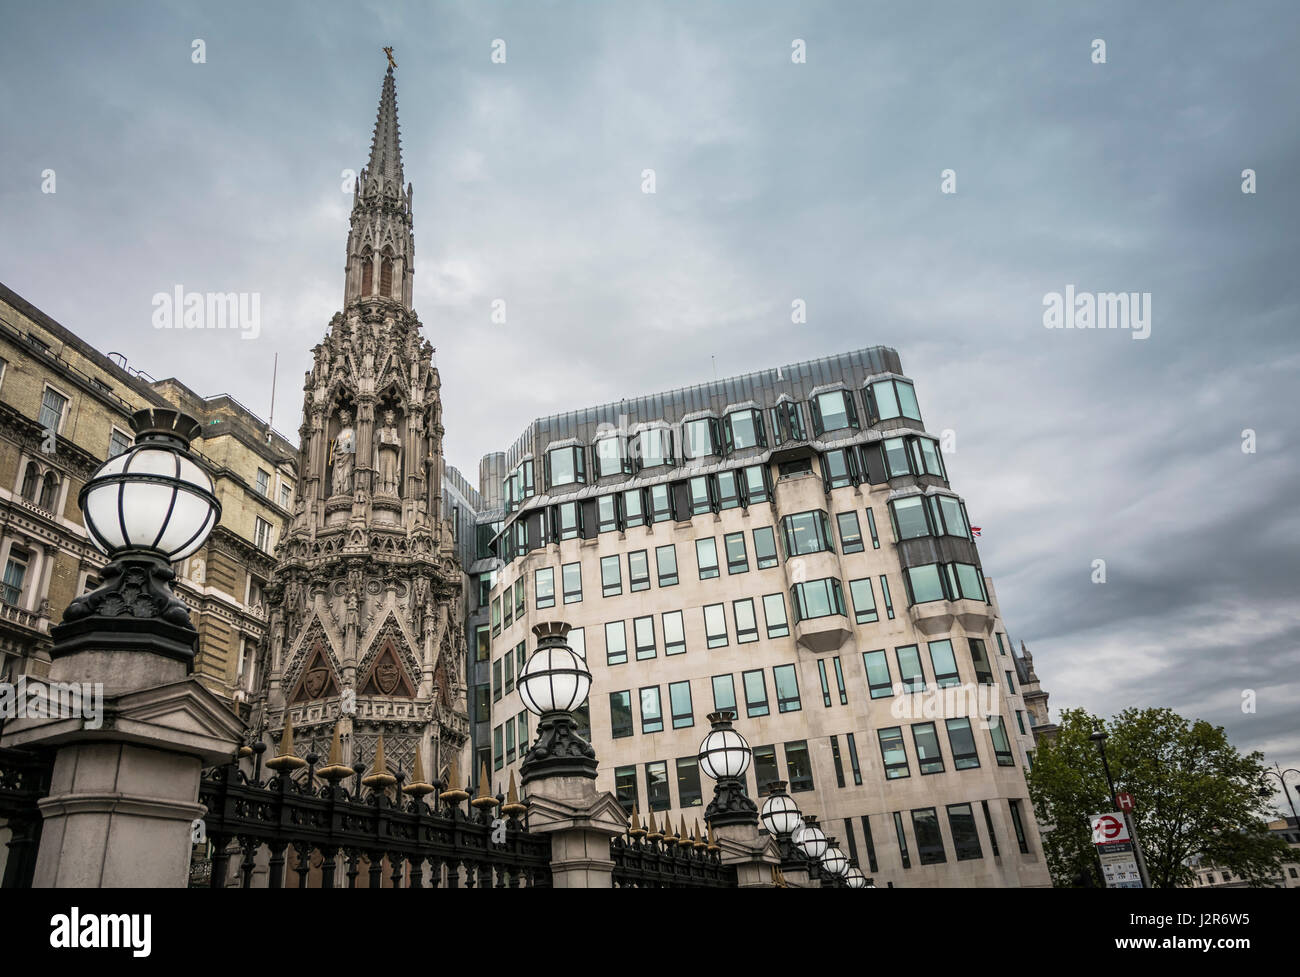 Le parvis de la gare de Charing Cross à Londres, Angleterre, Royaume-Uni Banque D'Images